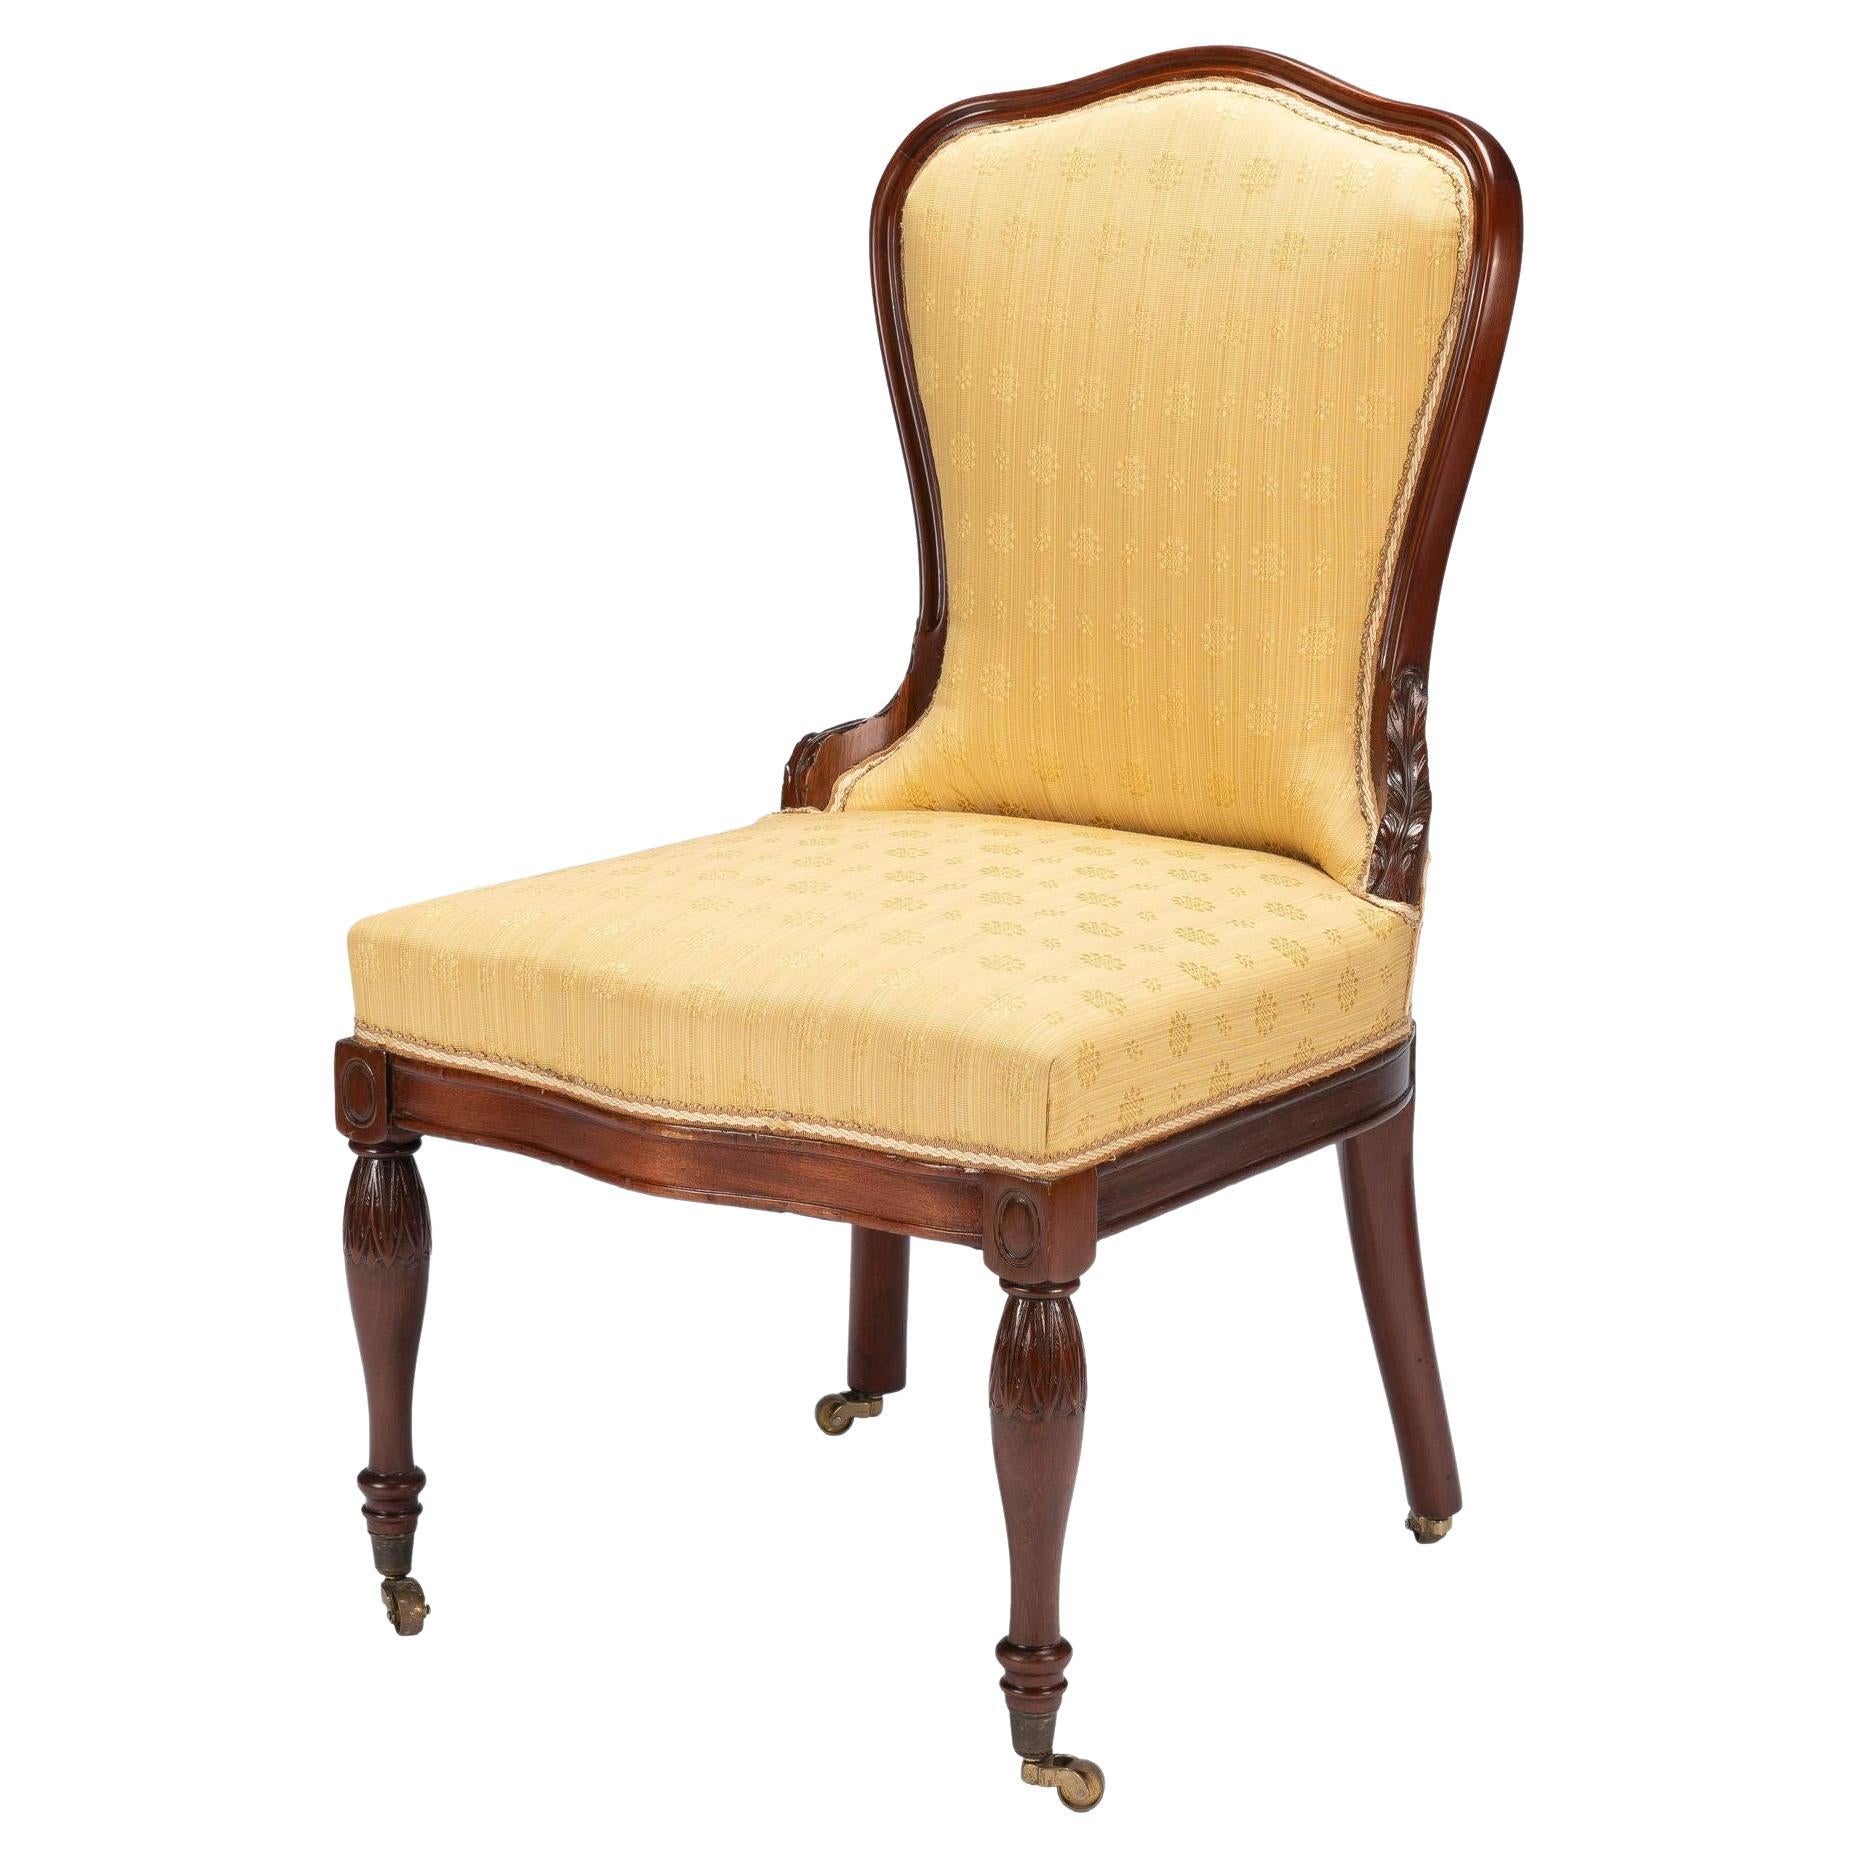 Baltimore Louis XVI Revival Upholstered Slipper Chair, '1850-75'